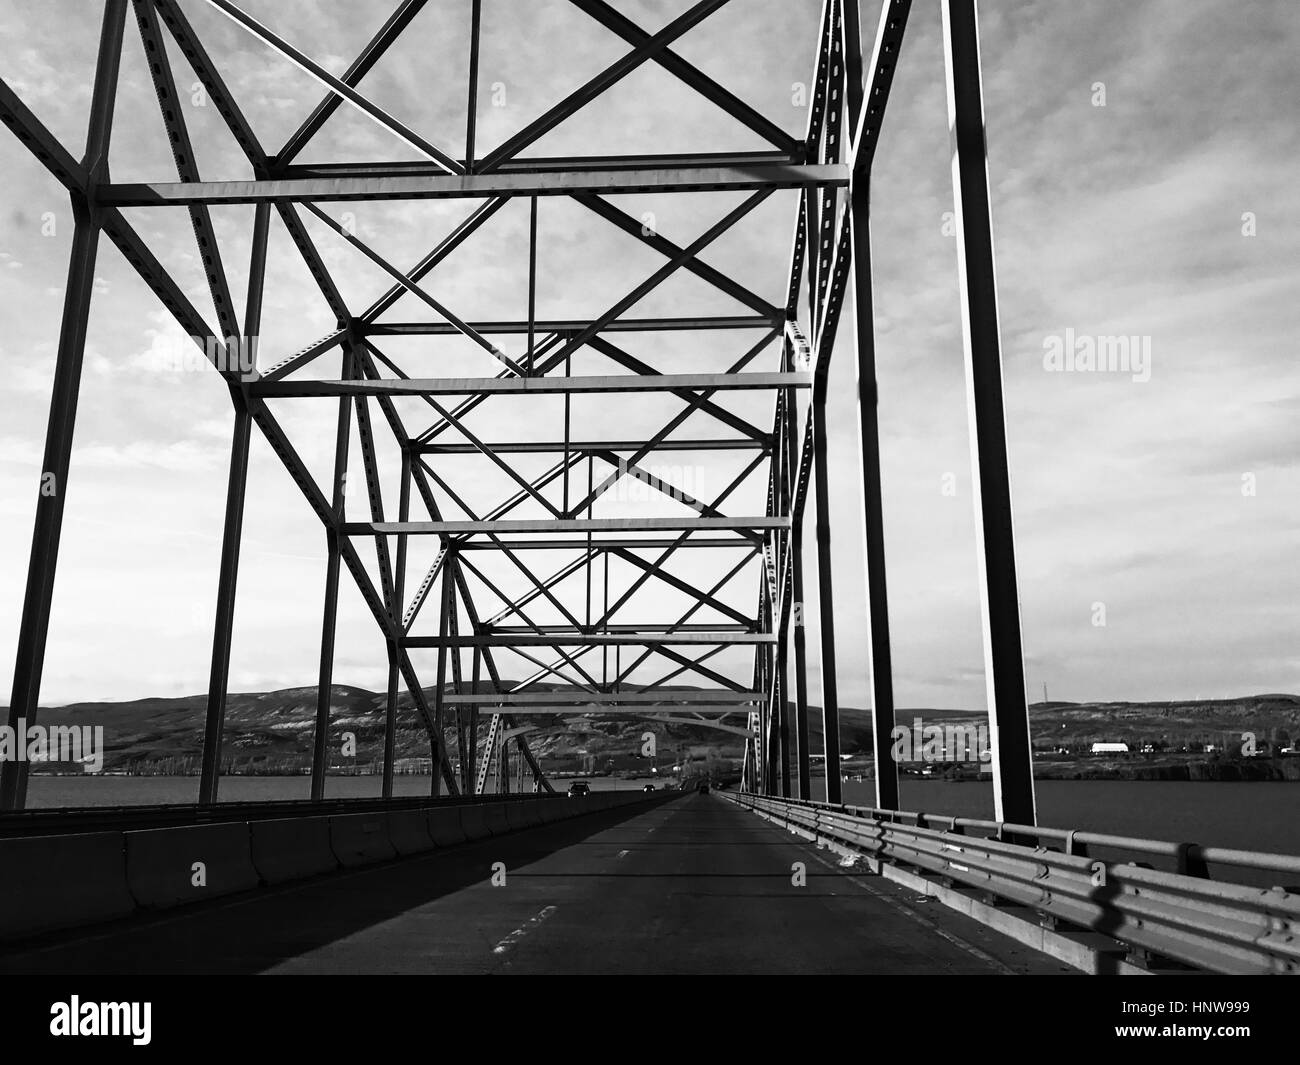 Puente colgante, bw fotografía Foto de stock